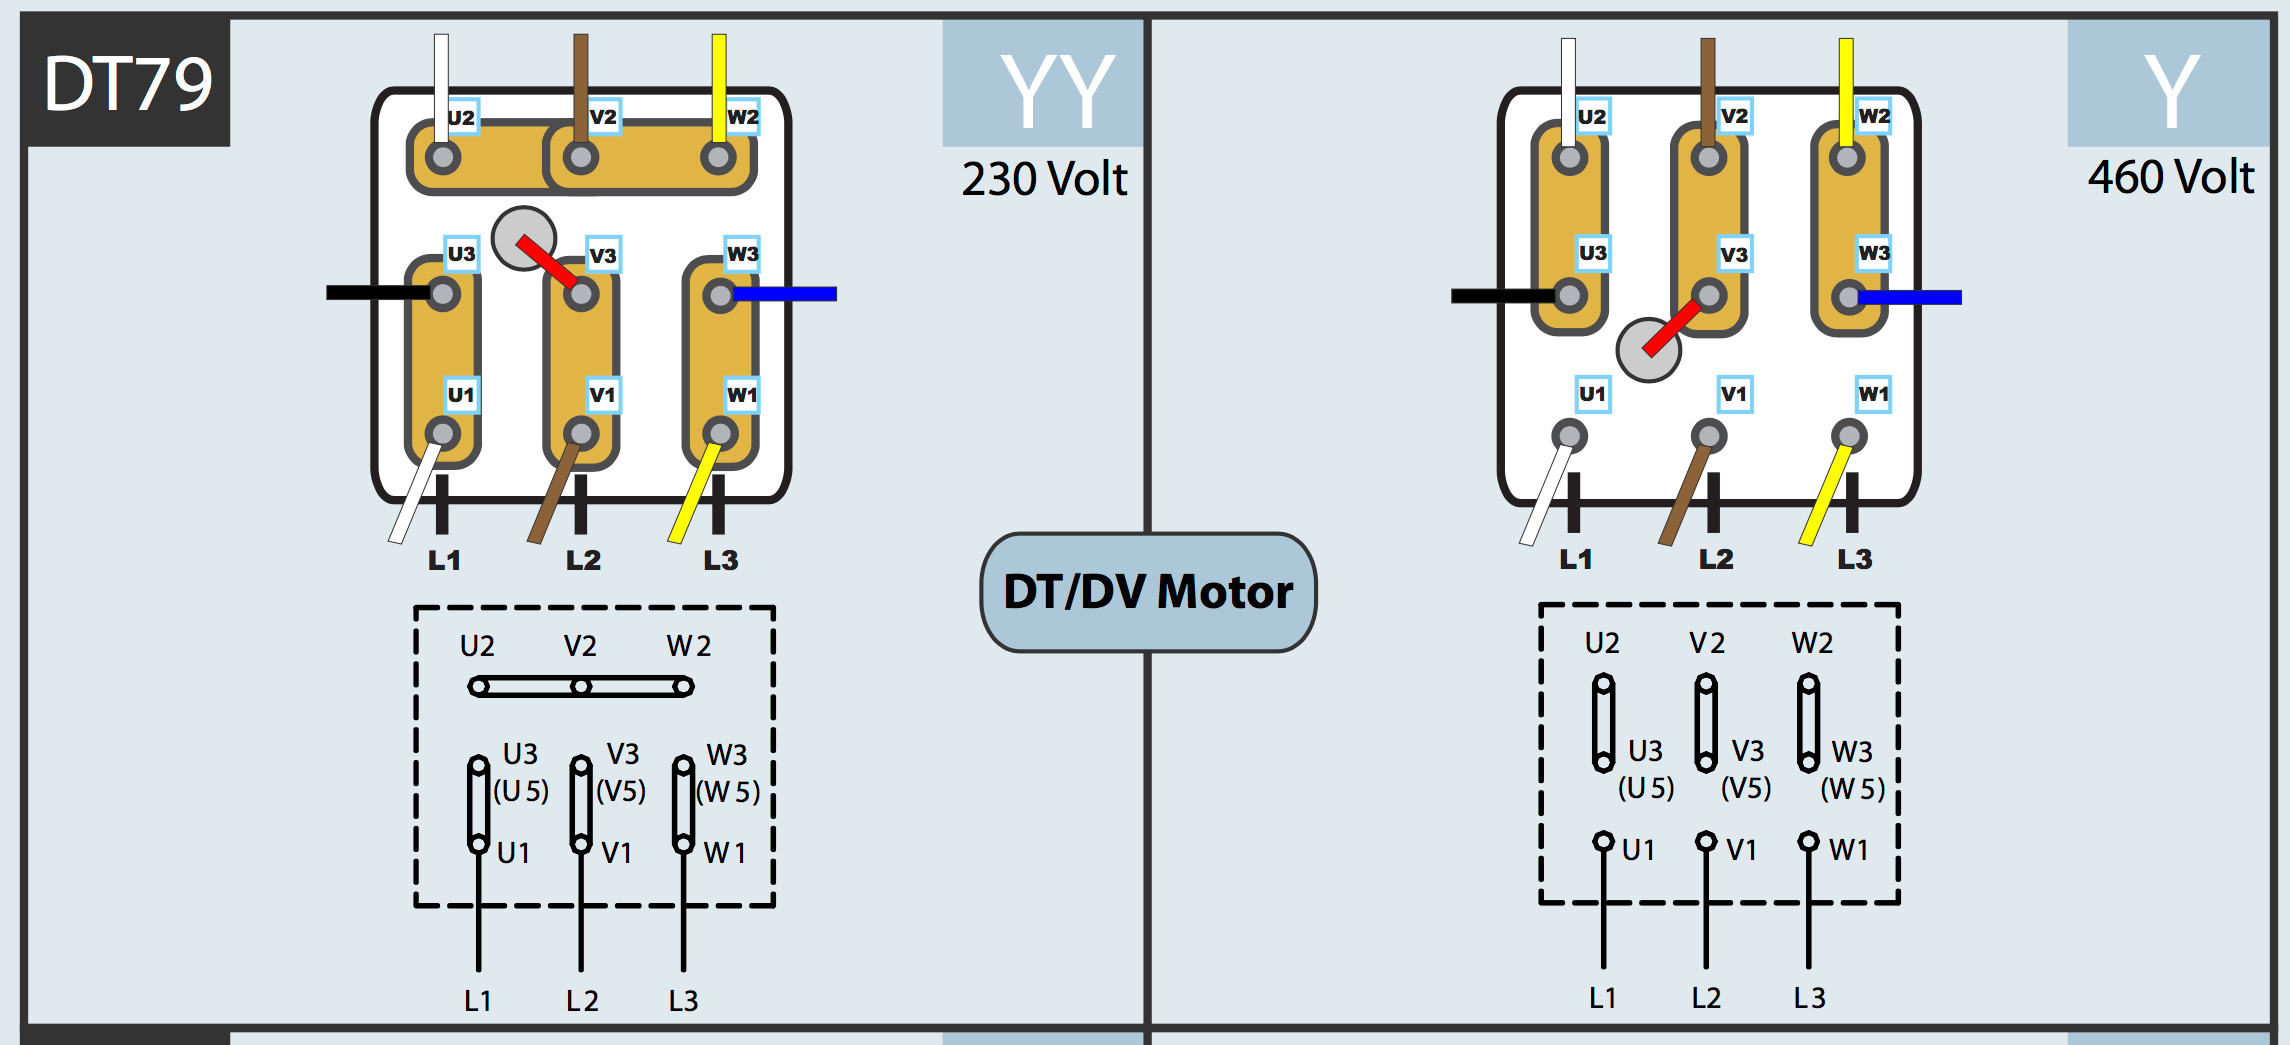 Baldor Motor Heater Wiring Diagram | Wiring Diagram - Motor Wiring Diagram